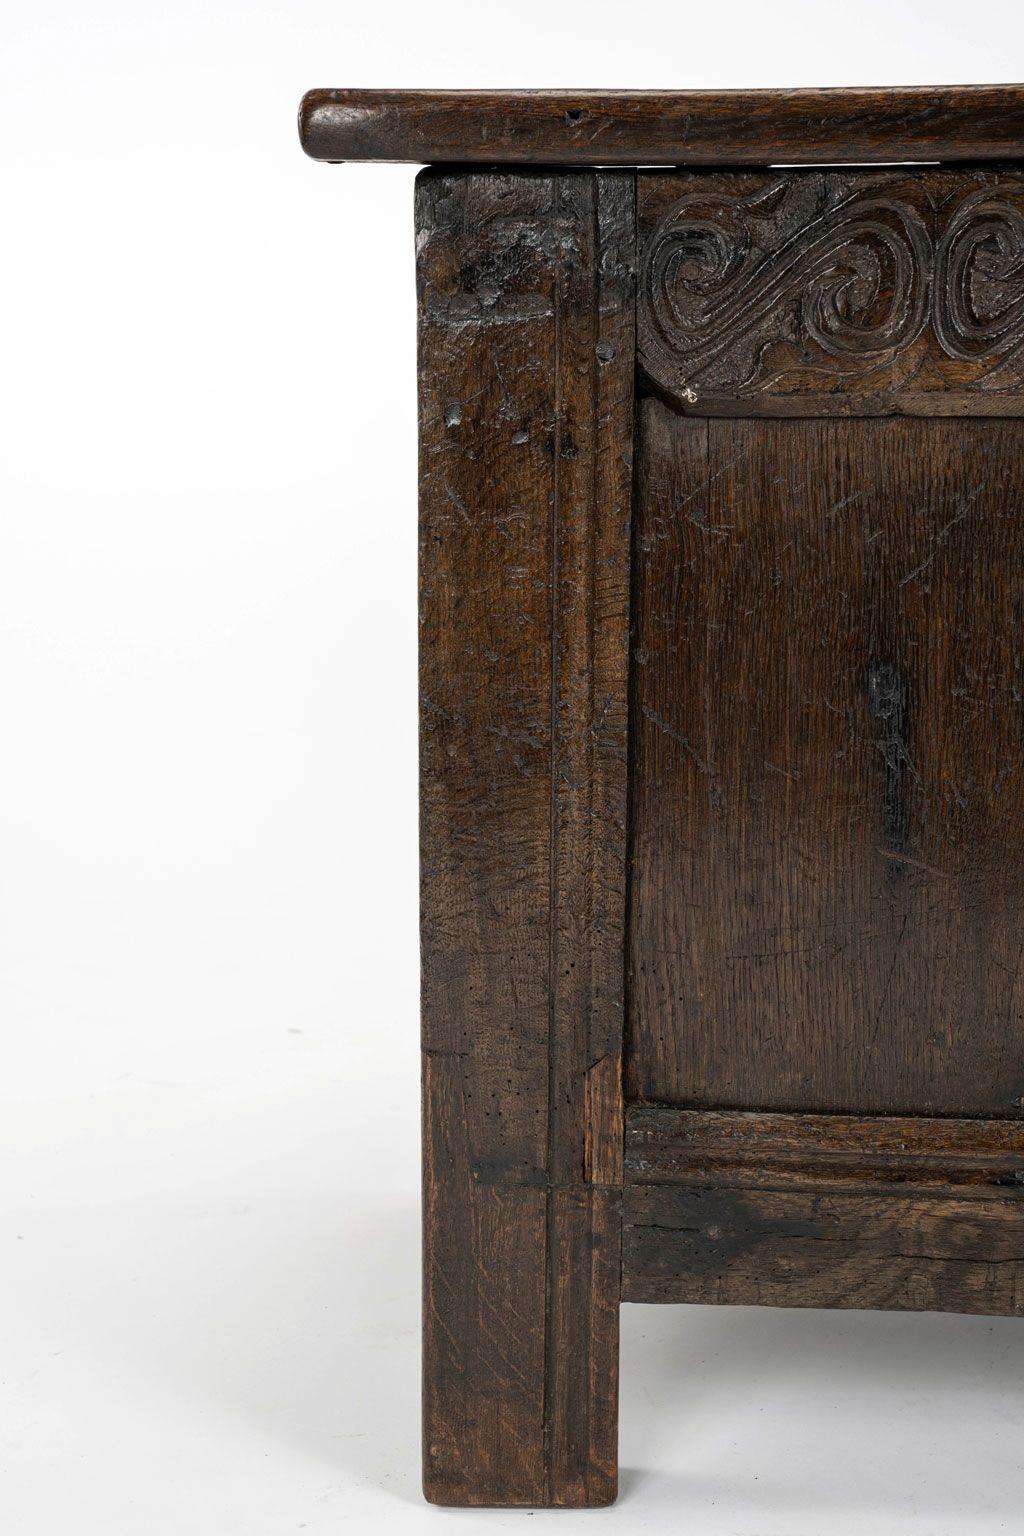 Eichenholzkassette aus dem 17. Jahrhundert mit dreifachem Paneel und aufklappbarem Paneel. Handgeschnitzte Verzierungen schmücken die vordere Reling und die Front. Geeignet als Tisch oder Sitzgelegenheit sowie zur Aufbewahrung. Ideal am Fußende